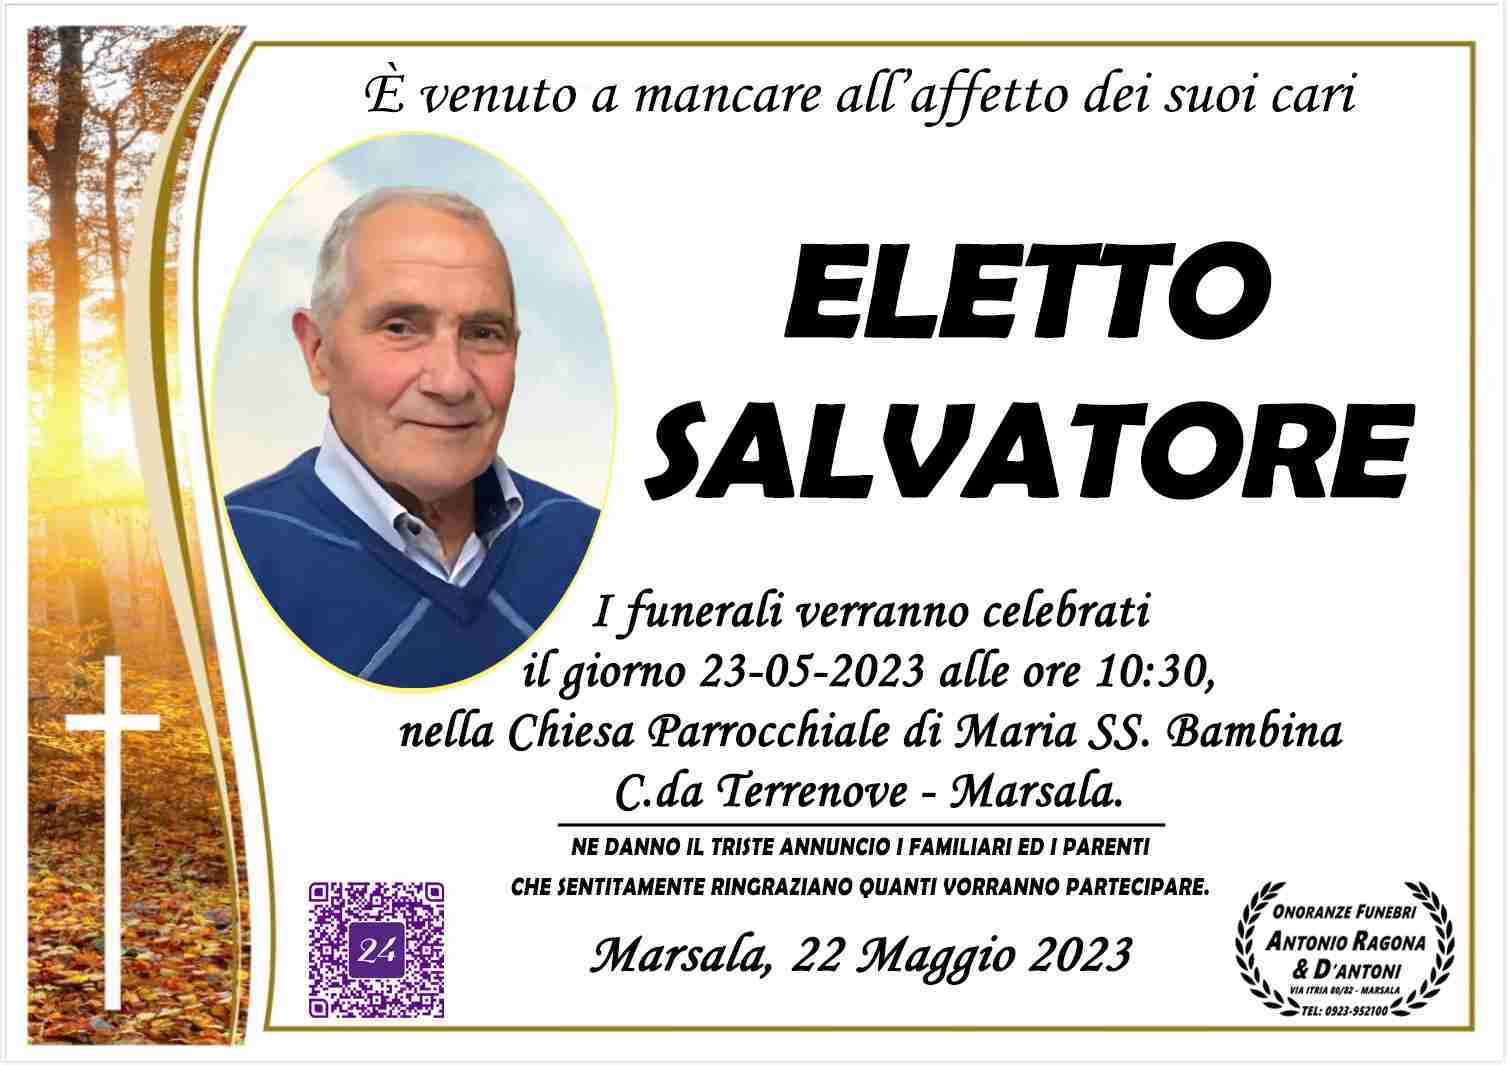 Salvatore Eletto